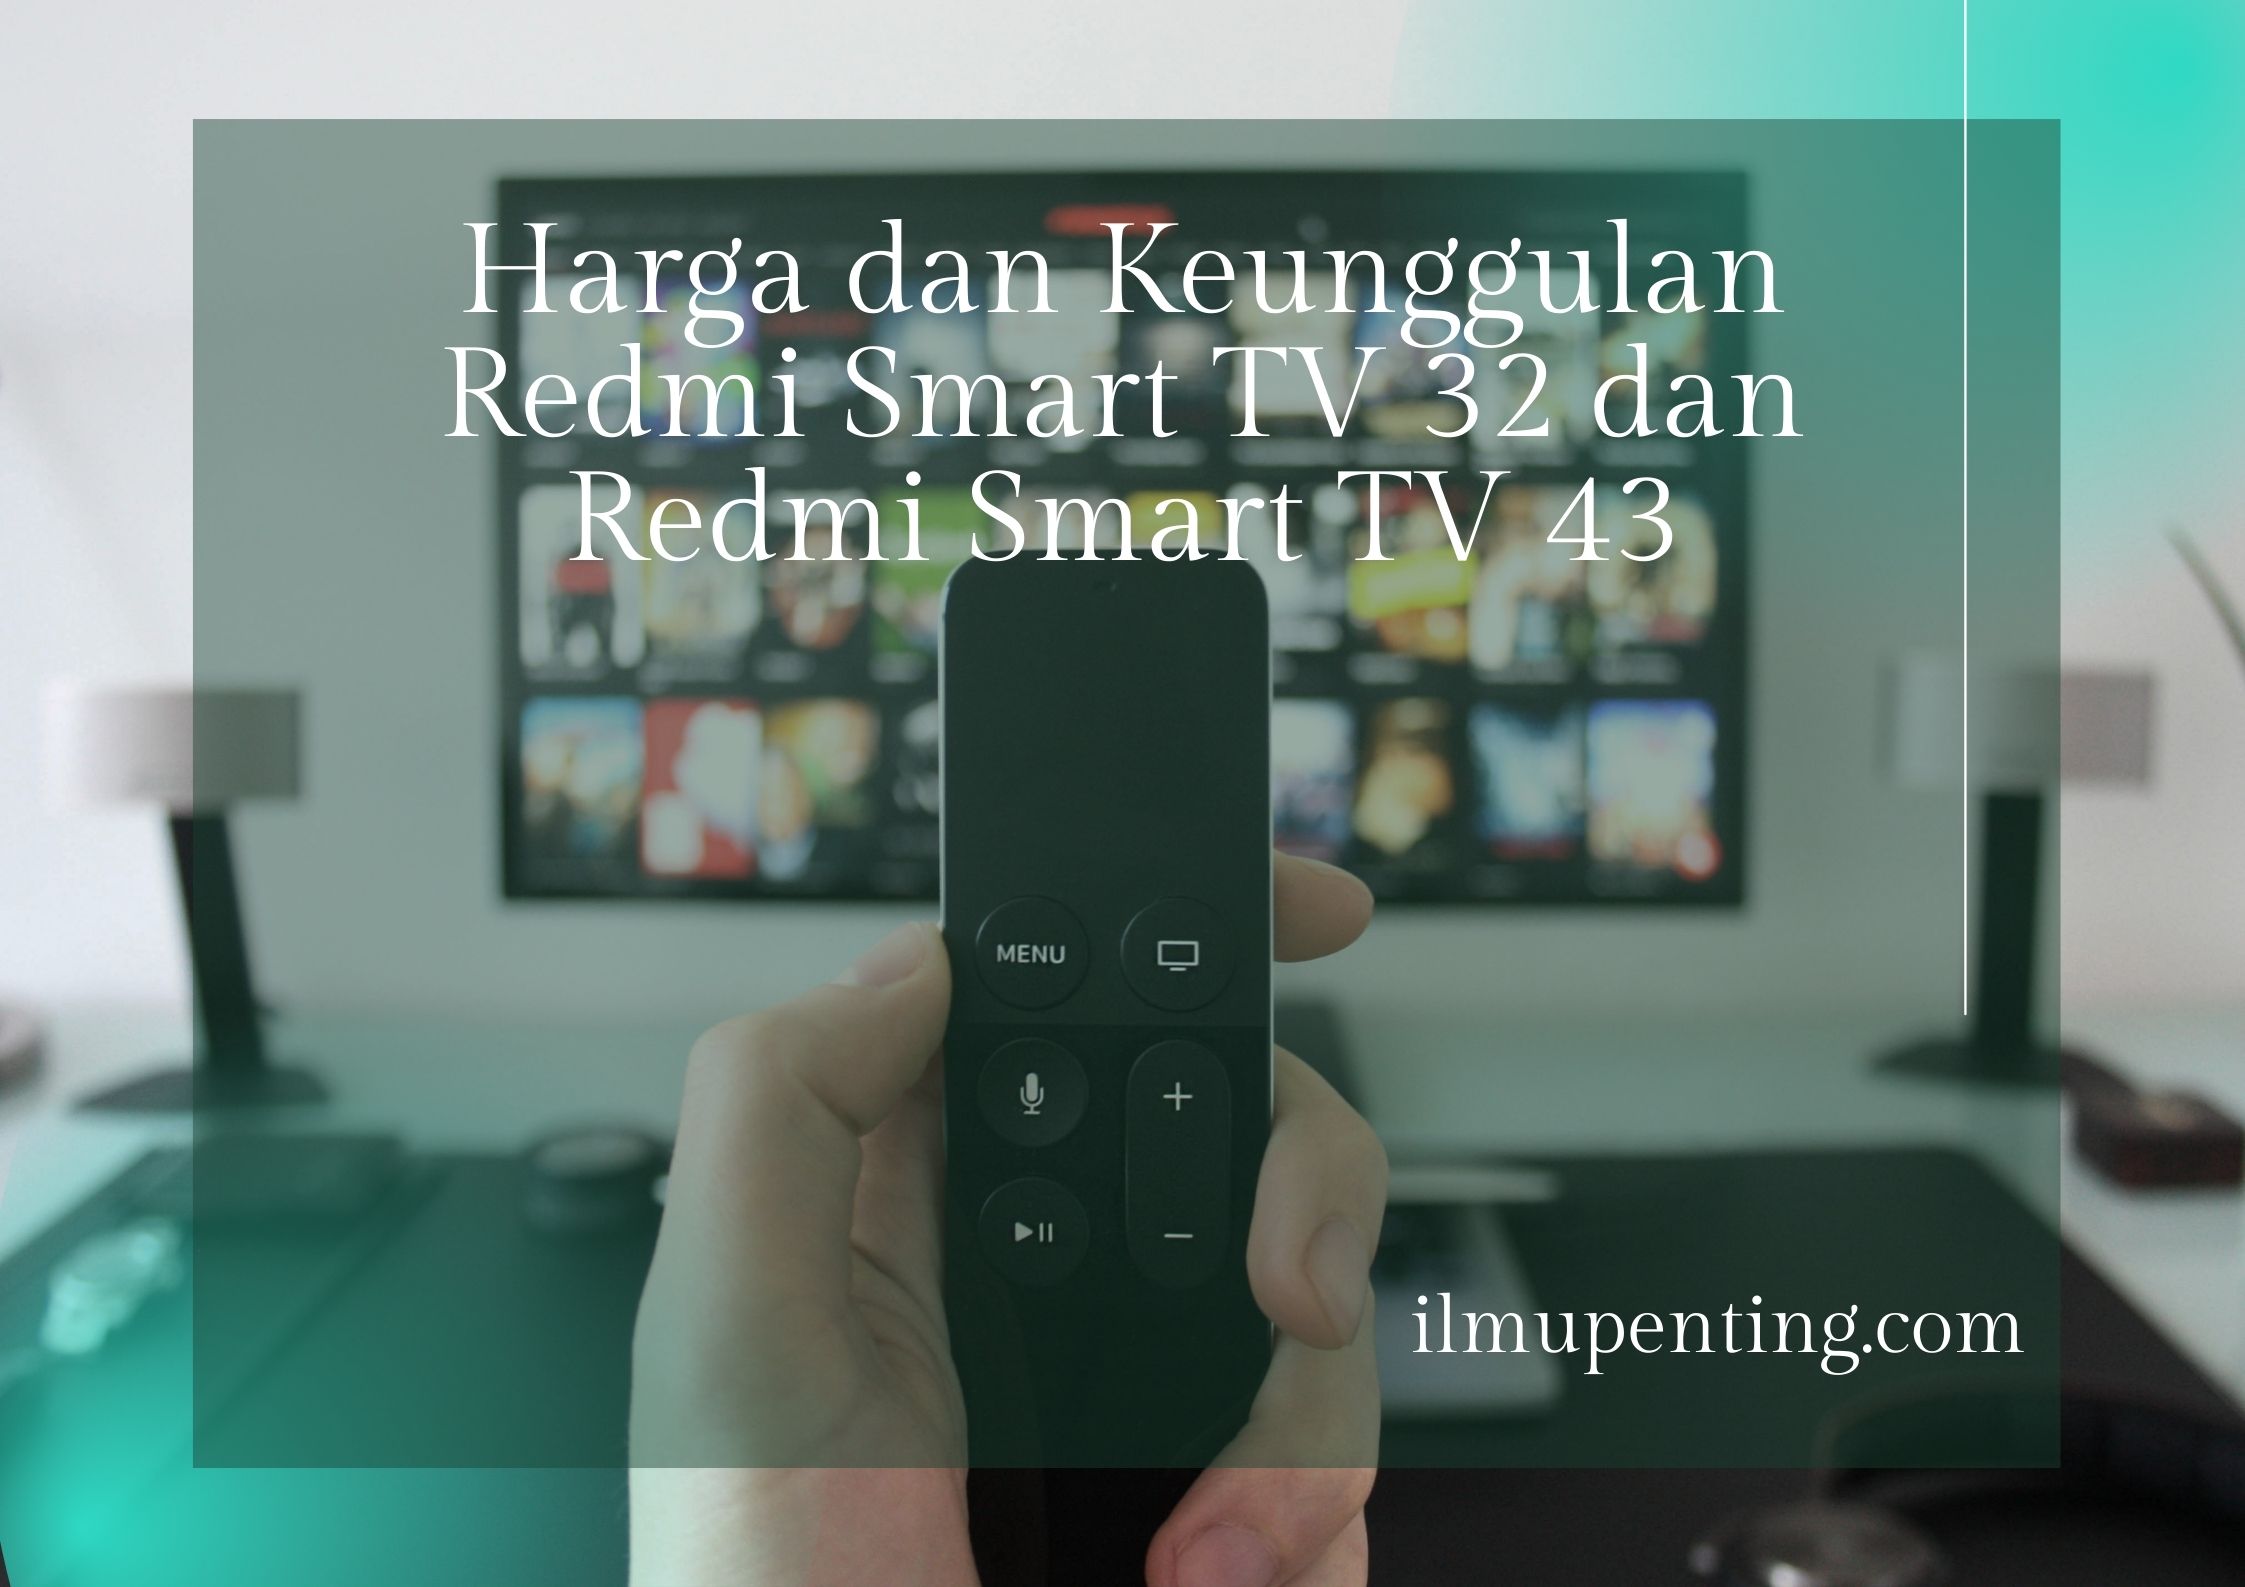 Harga dan Keunggulan Redmi Smart TV 32 dan Redmi Smart TV 43